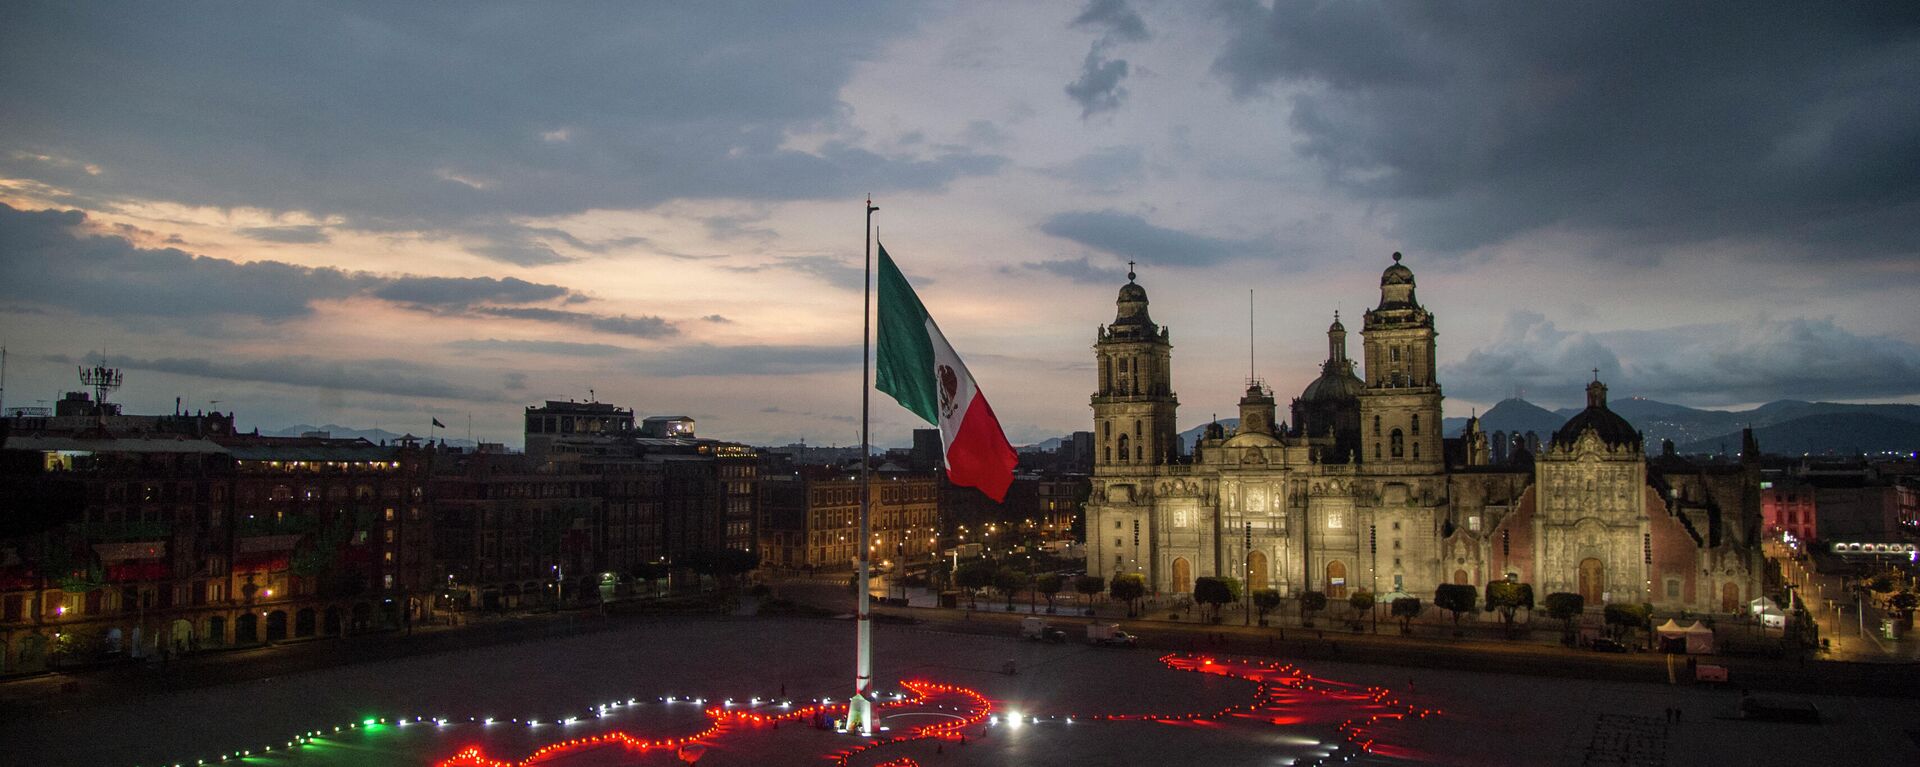 La bandera de México en el Zócalo capitalino durante la celebración del Día de lndependencia - Sputnik Mundo, 1920, 25.08.2021